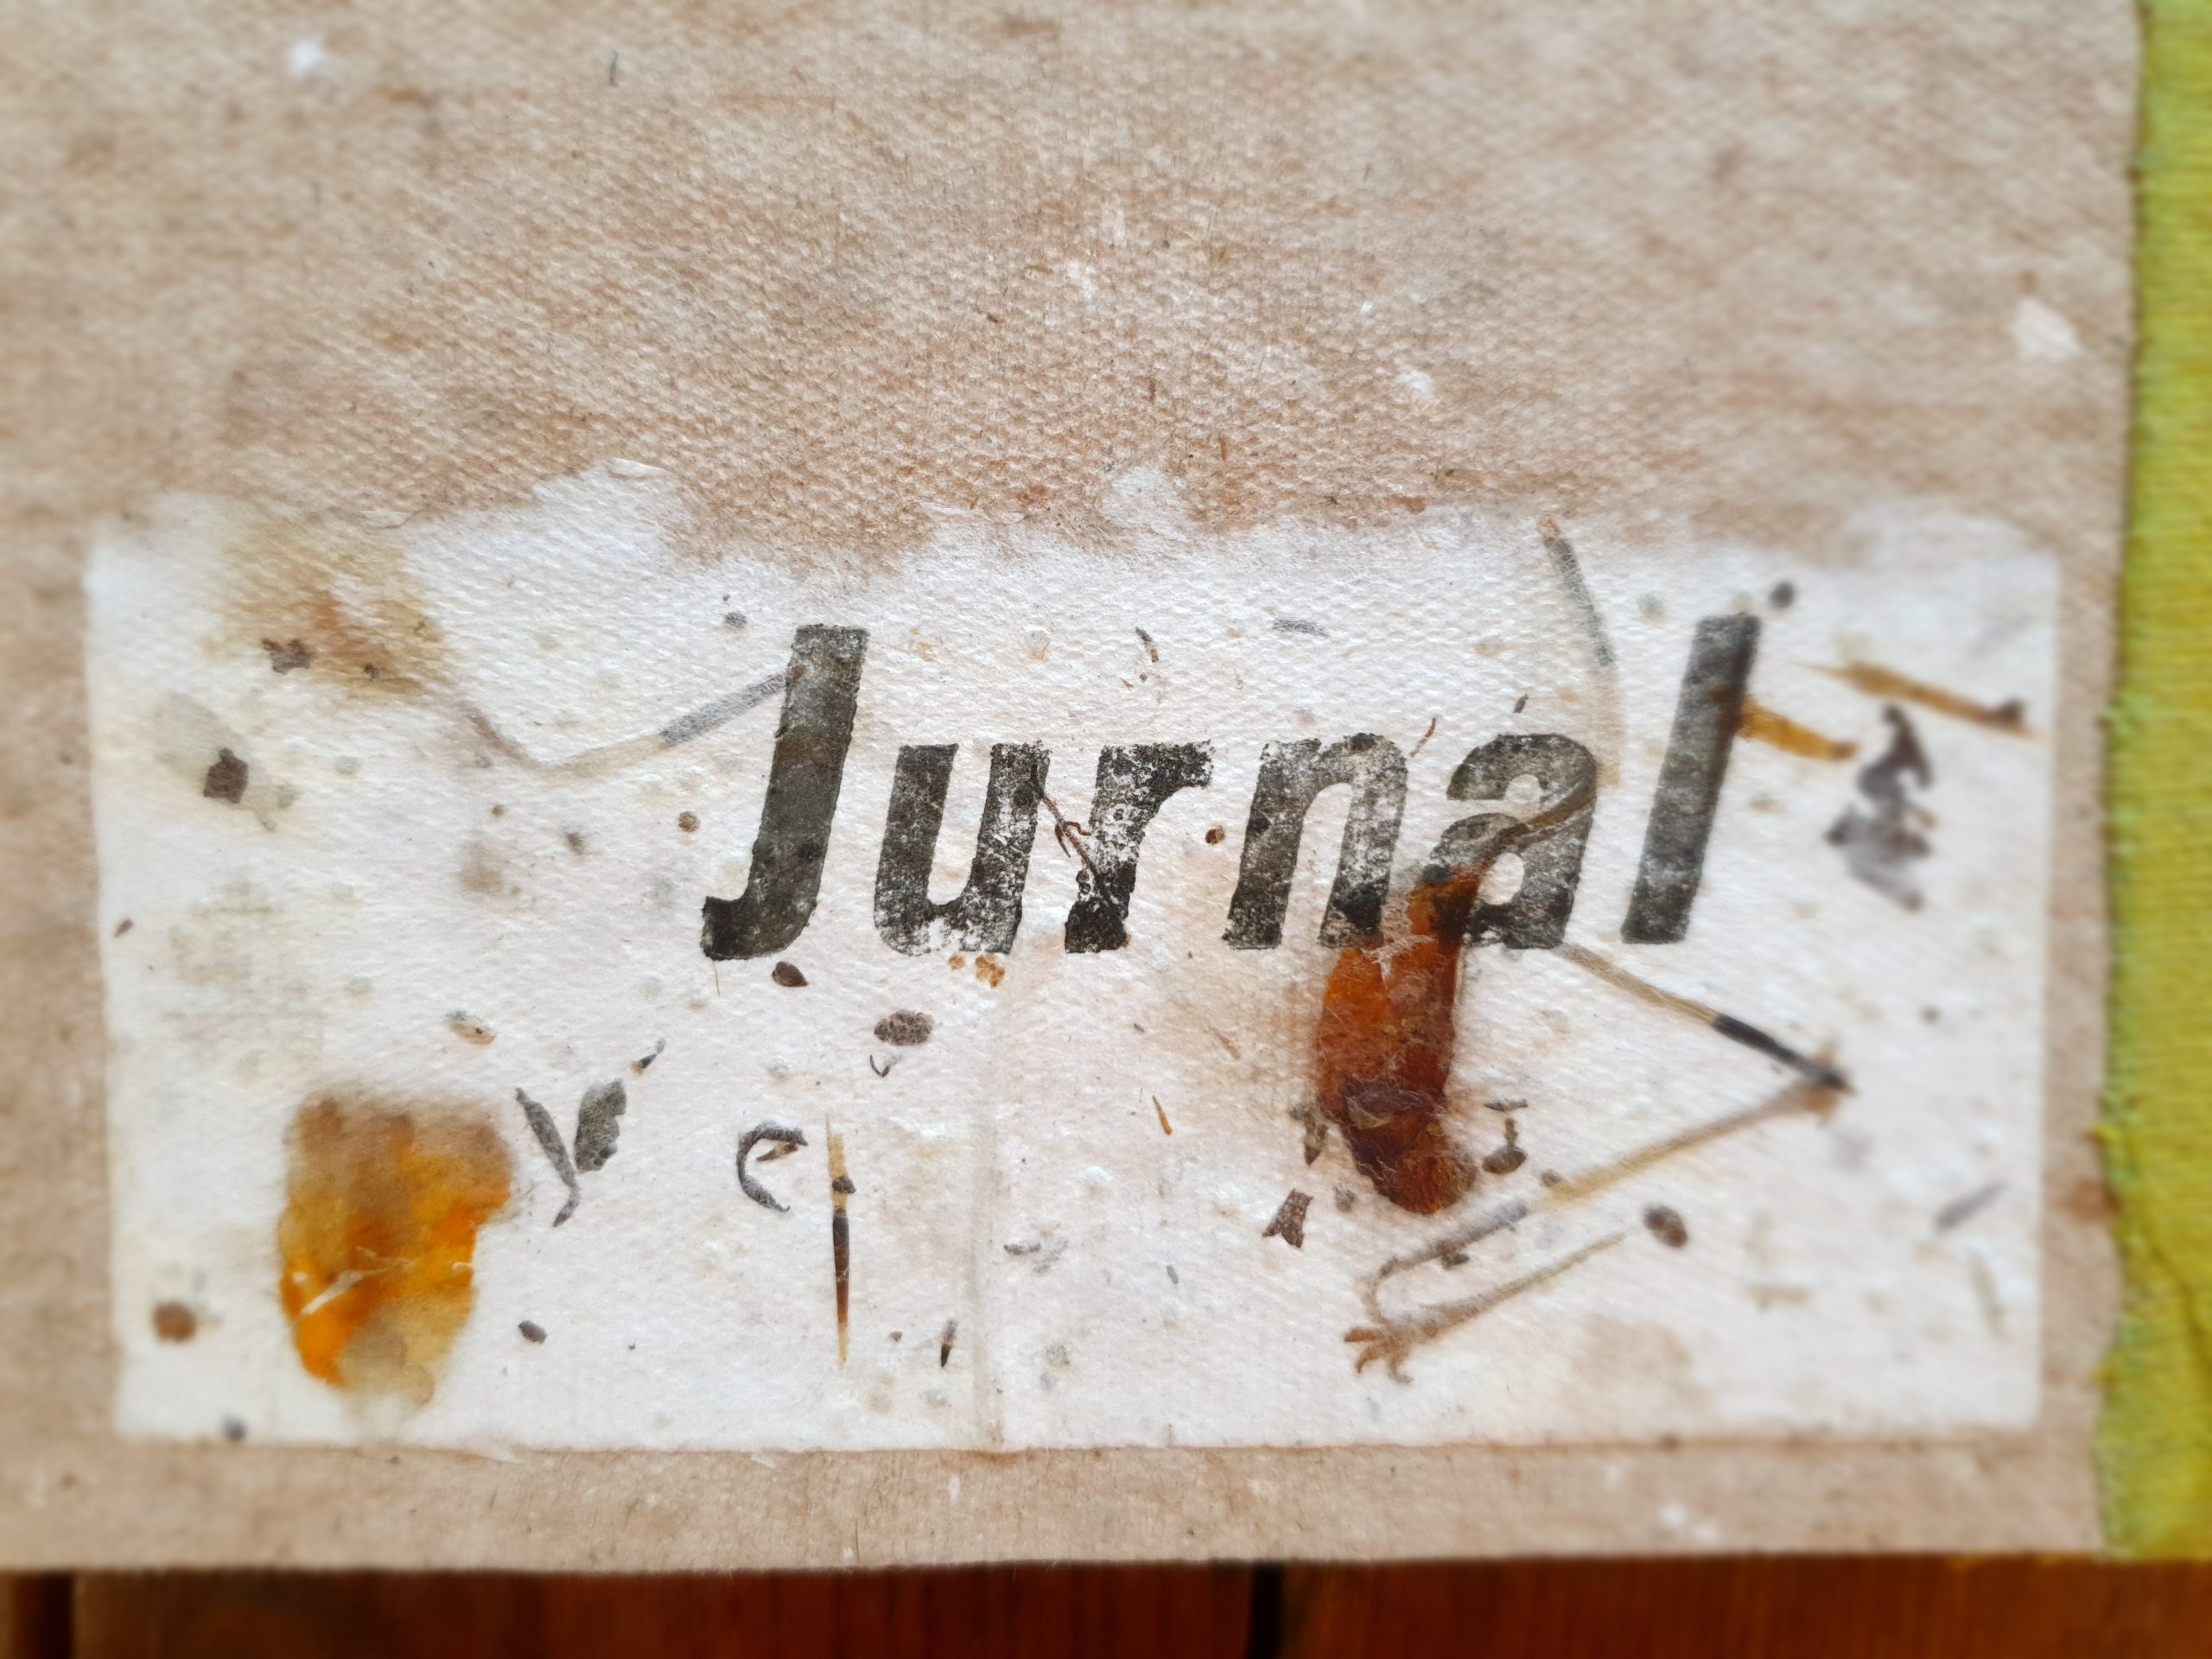 jurnal handmade